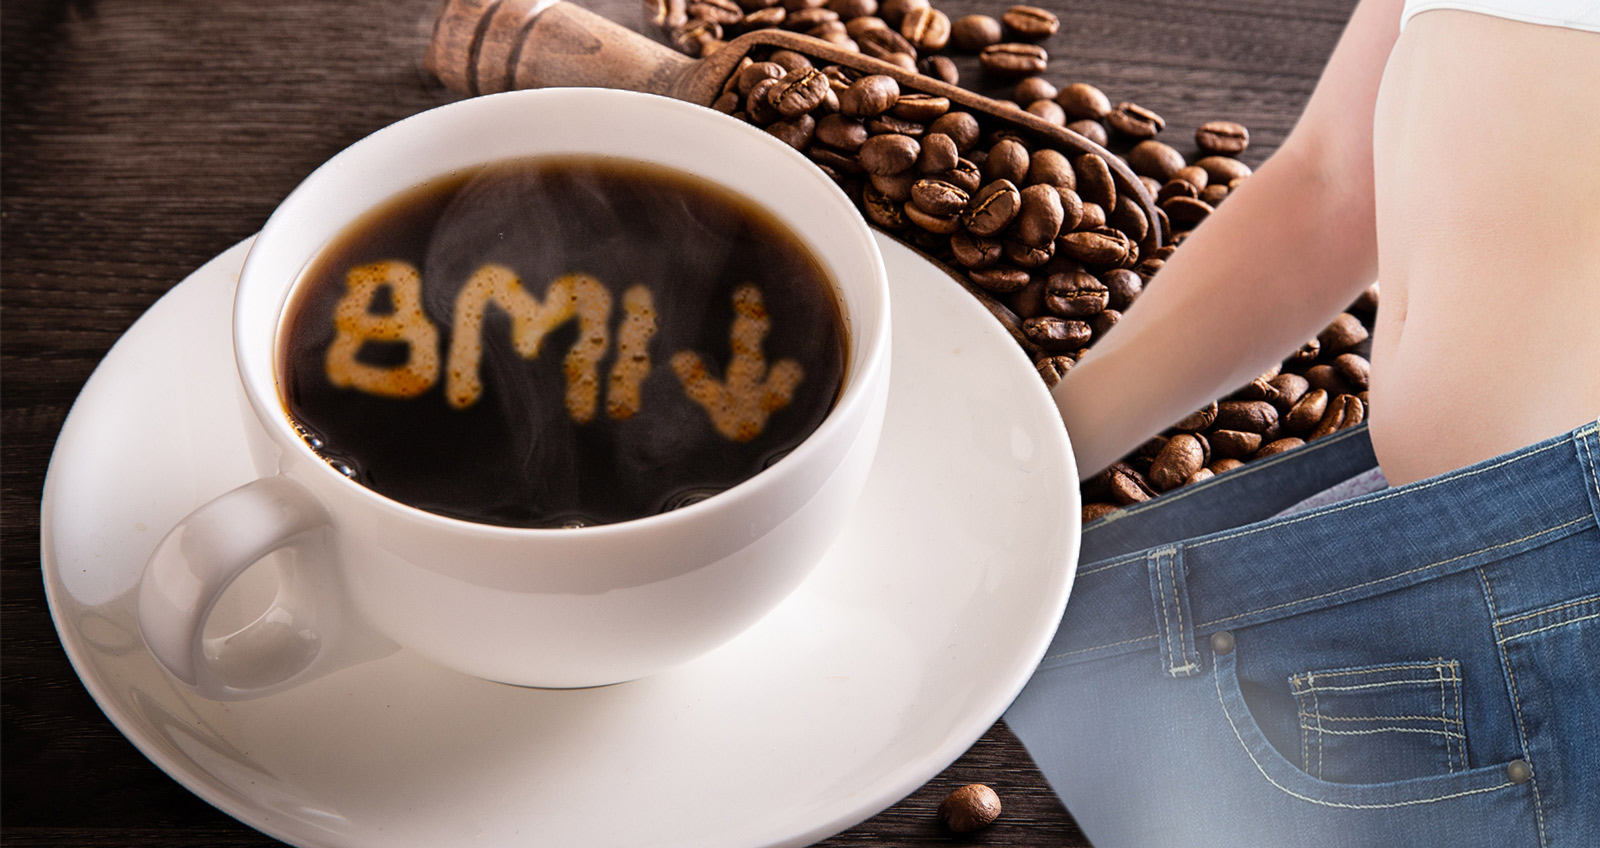 Eine gefüllte Kaffeetasse ist zu sehen. Der Schaum auf dem Kaffee formt das Kürzel "BMI", dahinter ein Pfeil nach unten. im Hintergrund Kafeebohnen und eine Frau, der ihre Jeans nicht mehr passt, weil sie zu schlank ist.